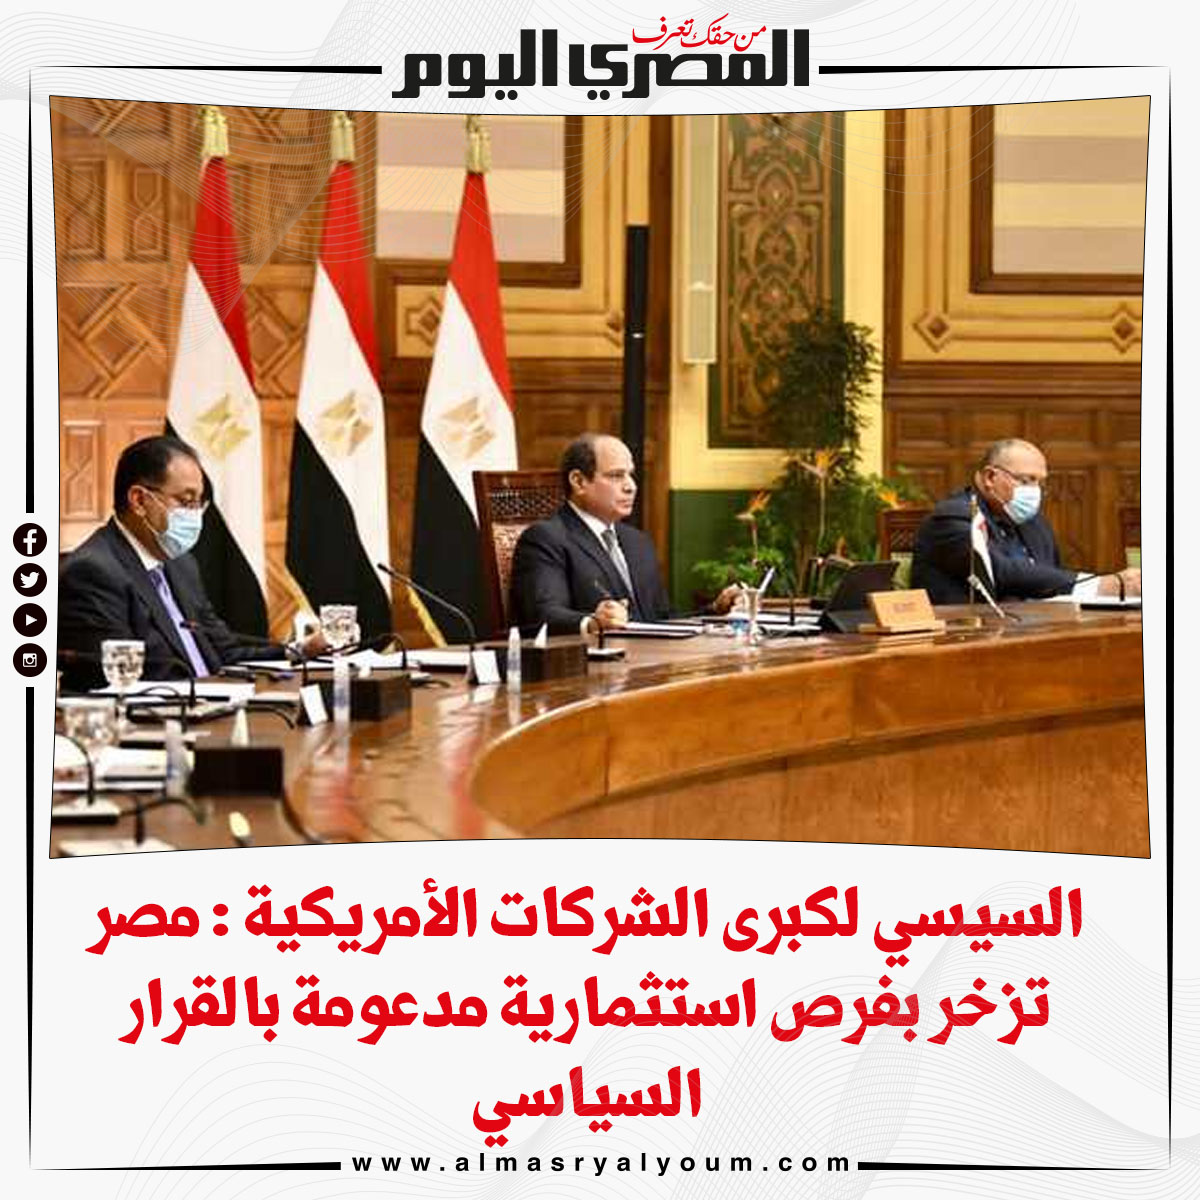 السيسي لكبرى الشركات الأمريكية مصر تزخر بفرص استثمارية مدعومة بالقرار السياسي